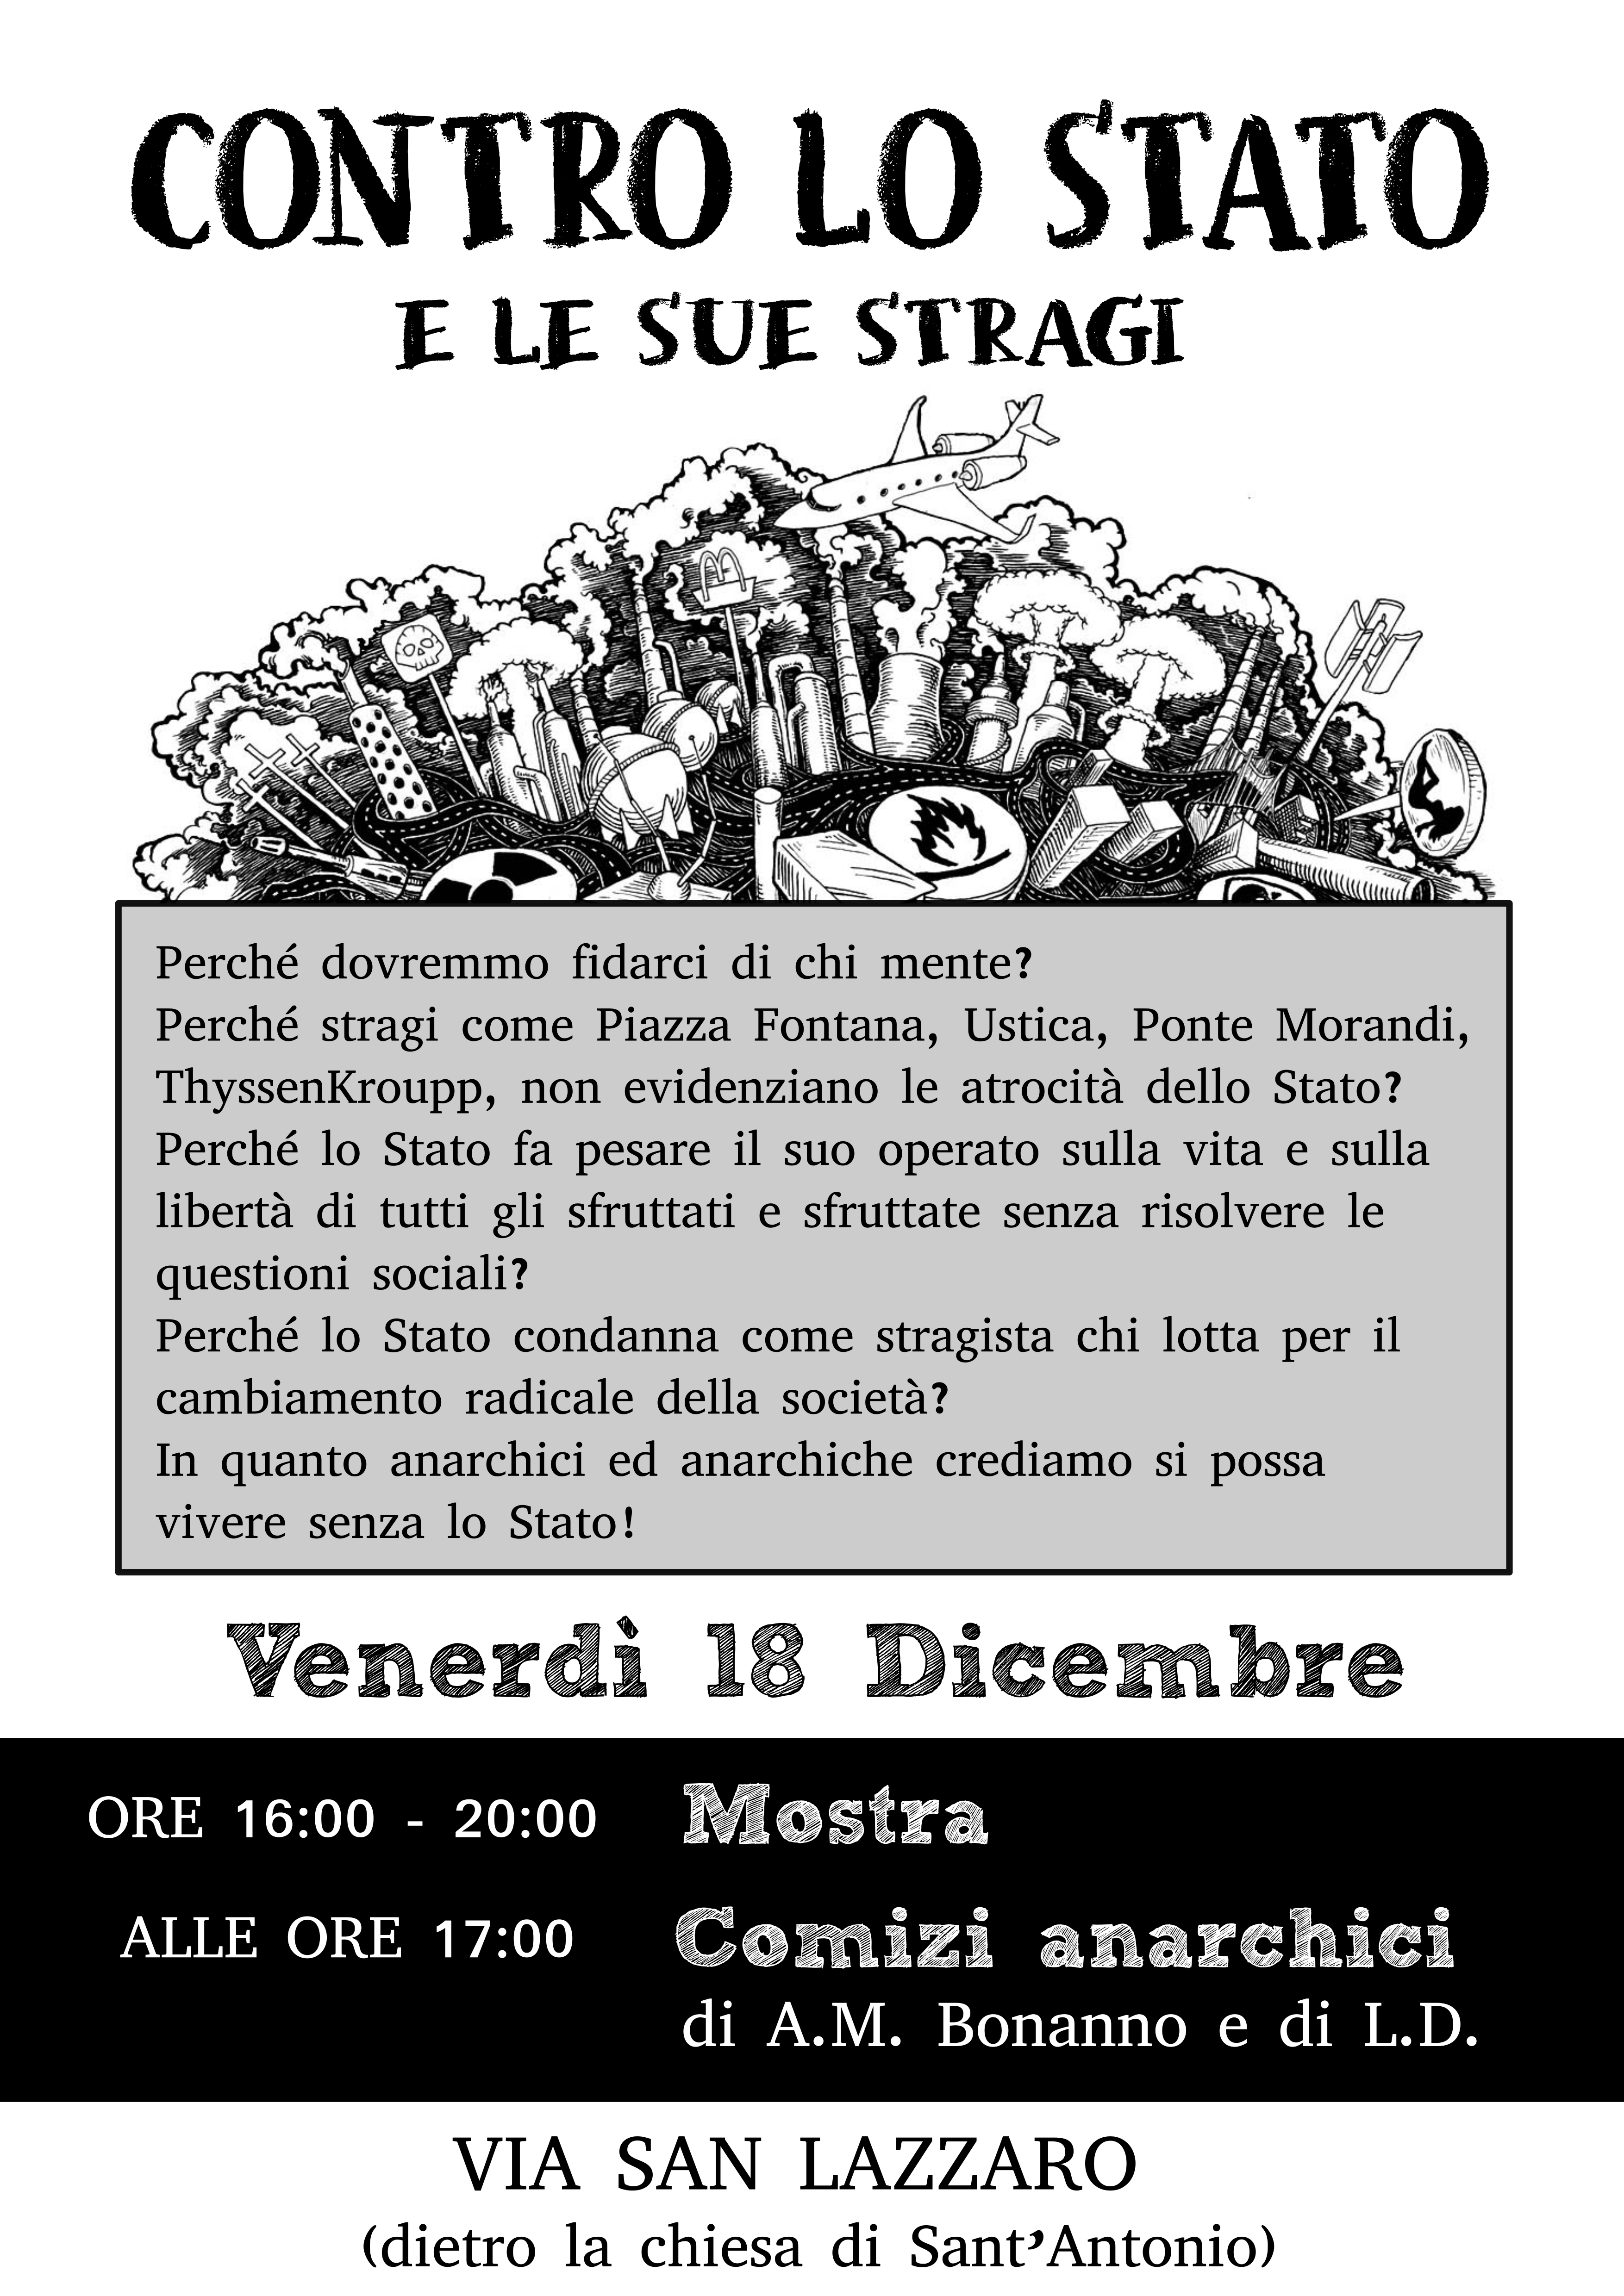 Trieste: Contro lo Stato, comizio anarchico